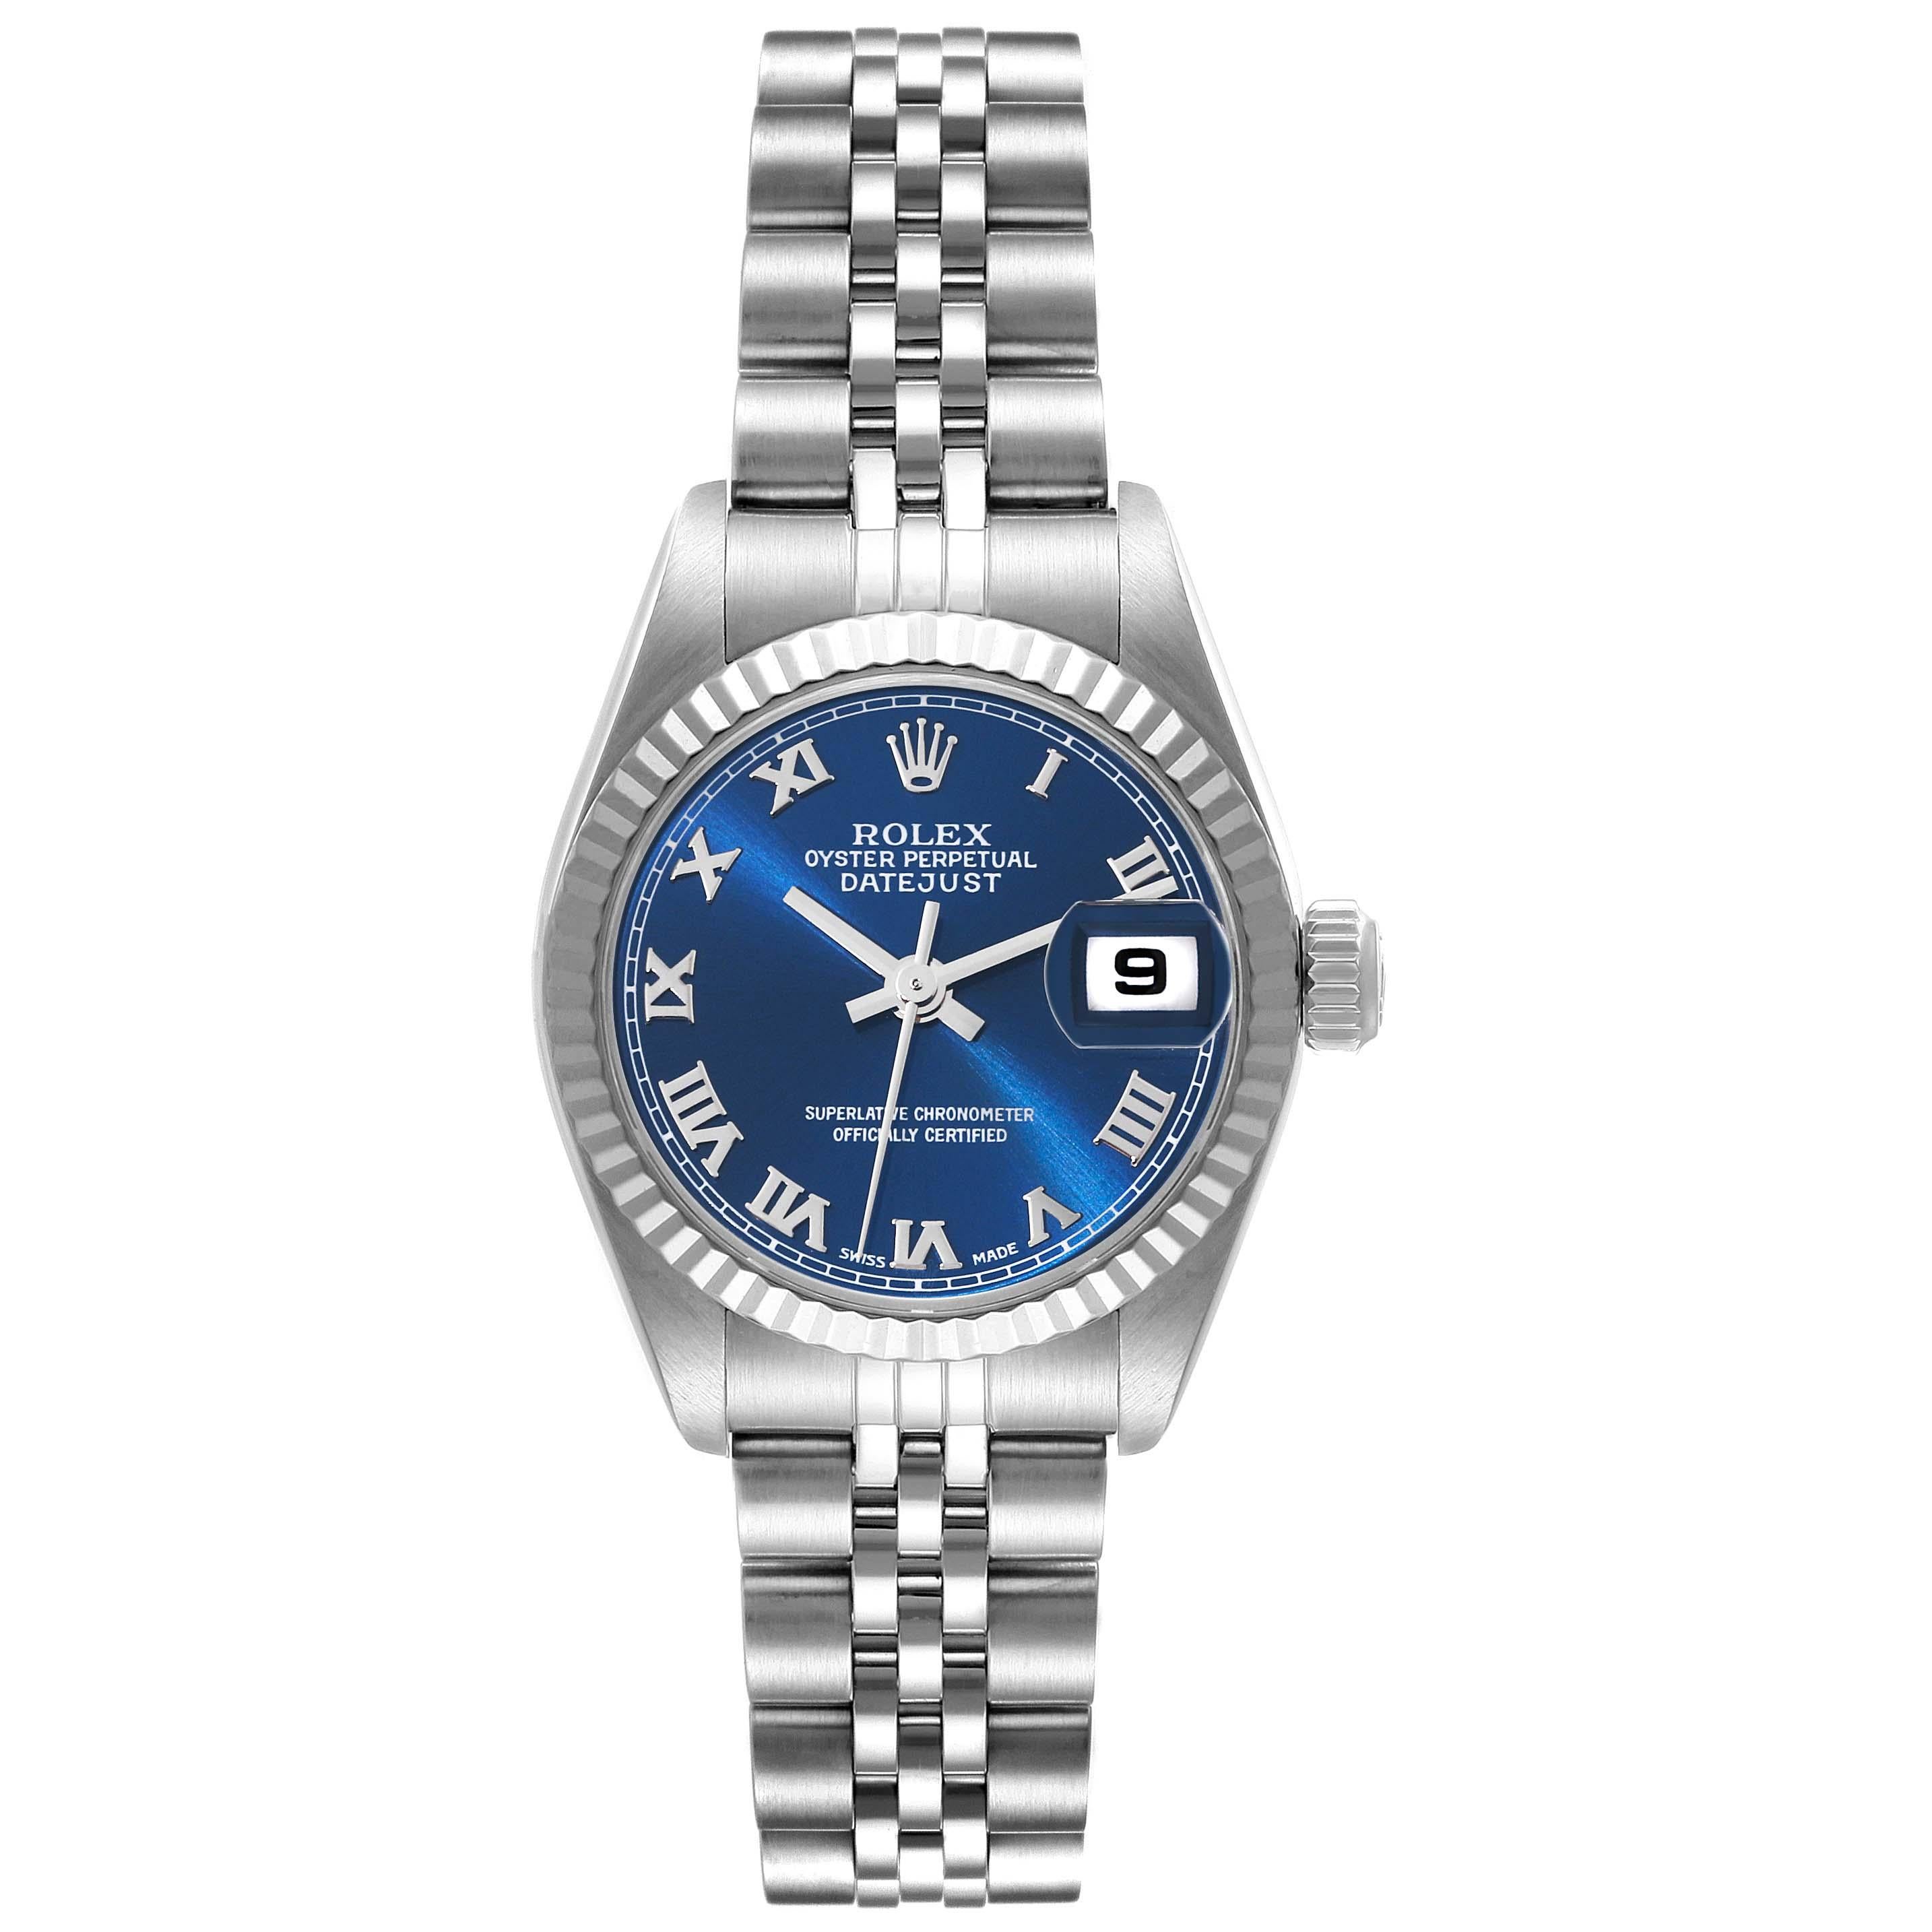 Rolex Datejust Blue Dial White Gold Steel Ladies Watch 79174 Box Papers. Mouvement automatique à remontage automatique, officiellement certifié chronomètre. Boîtier oyster en acier inoxydable de 26.0 mm de diamètre. Logo Rolex sur la couronne.